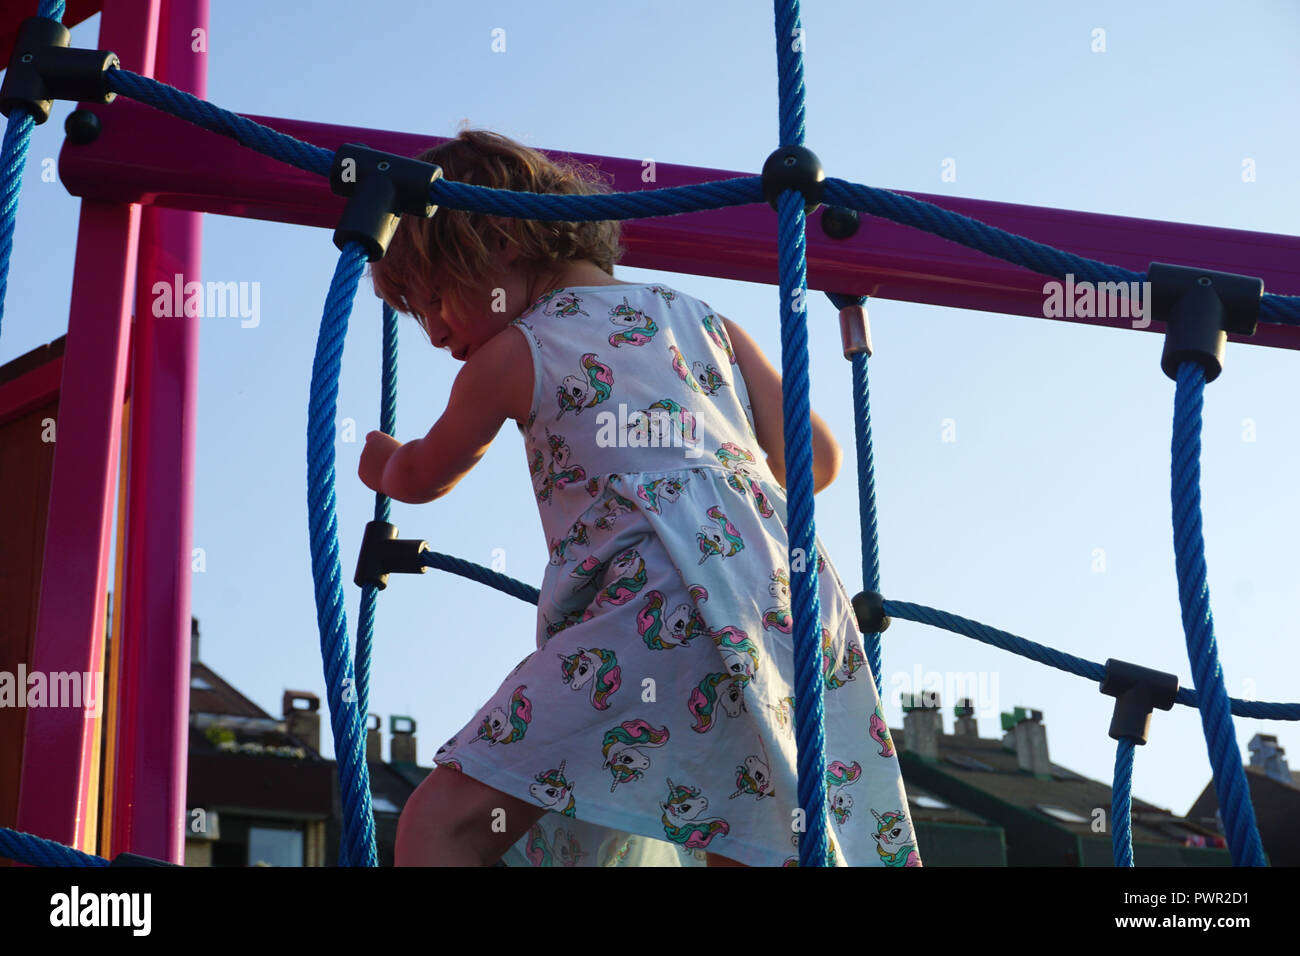 Activités d'escalade sur l'aire de jeux pour enfants. Une petite fille jouant sur une aire de jeux Banque D'Images